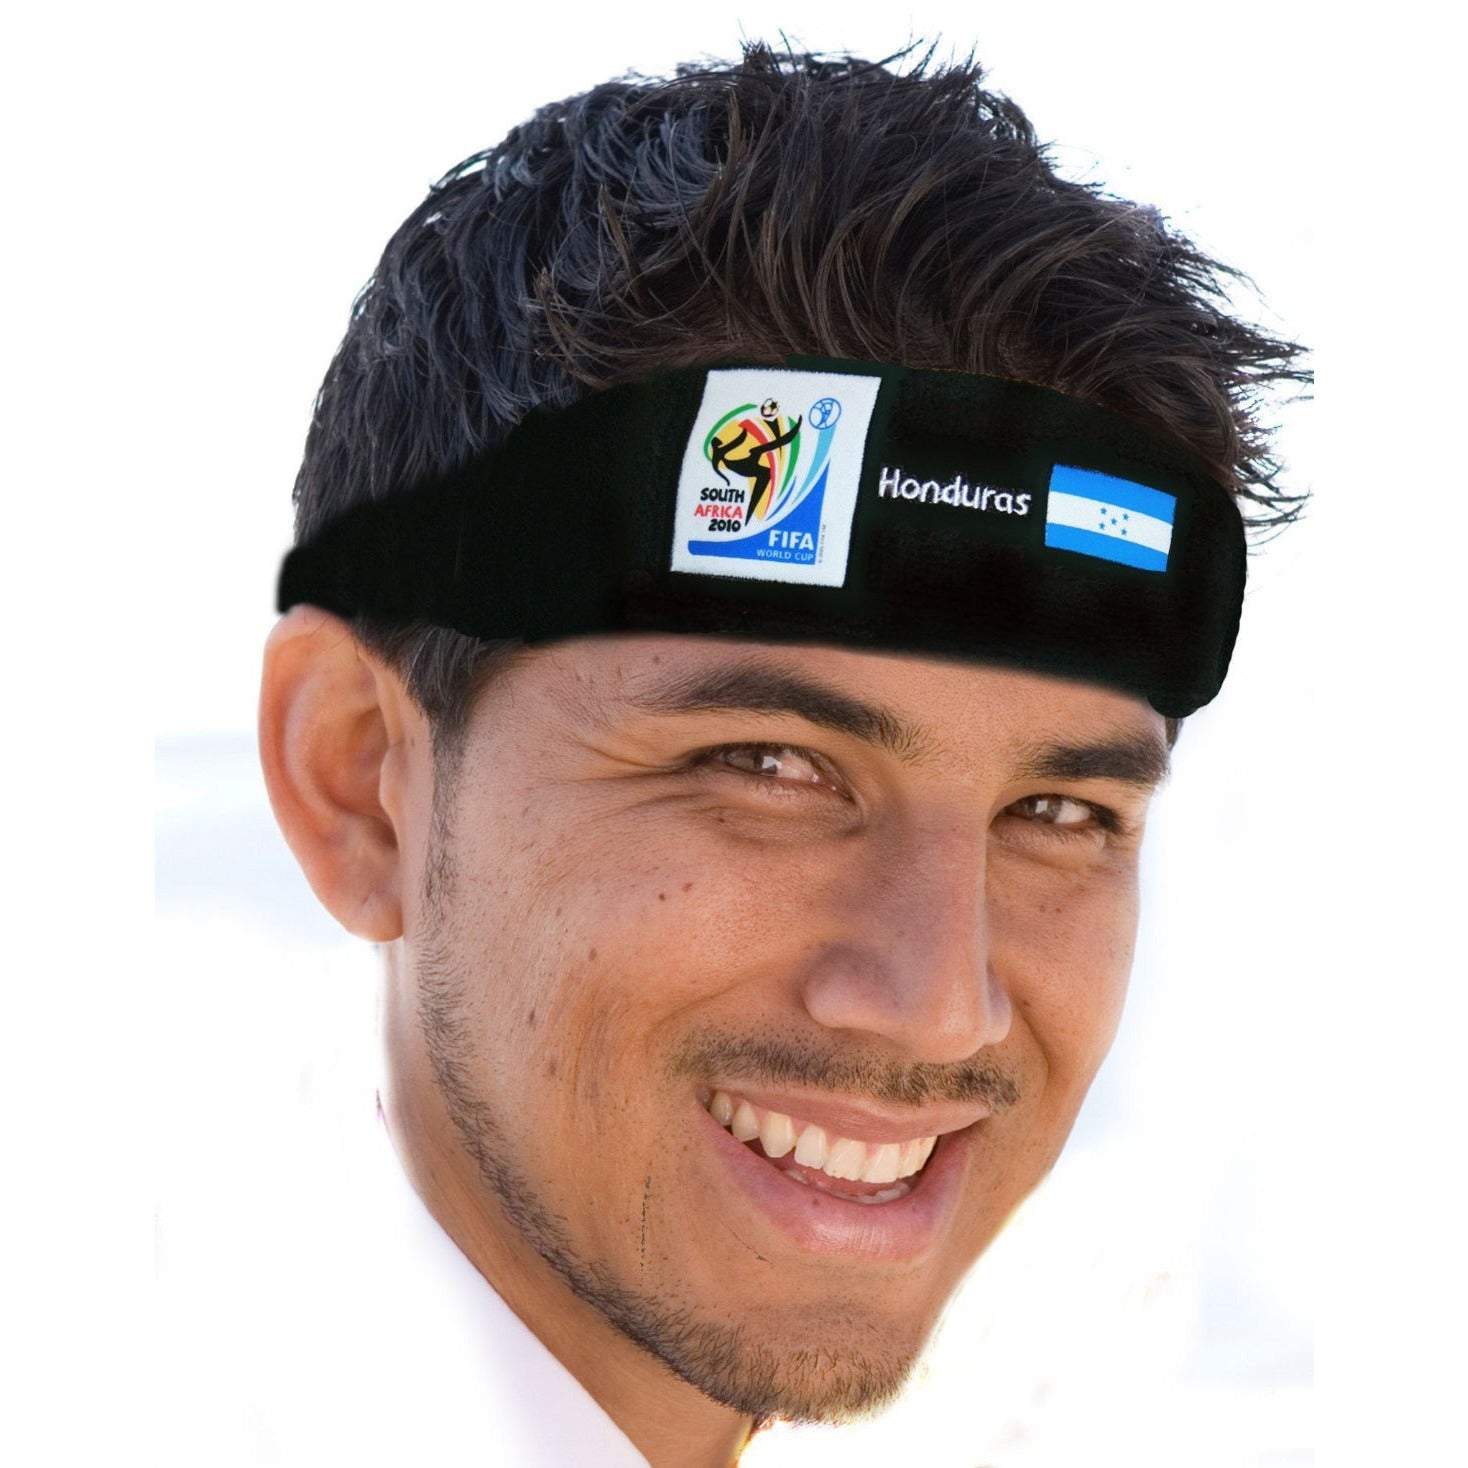 Soccer Headband - Official FIFA - HONDURAS - VIP Extensions